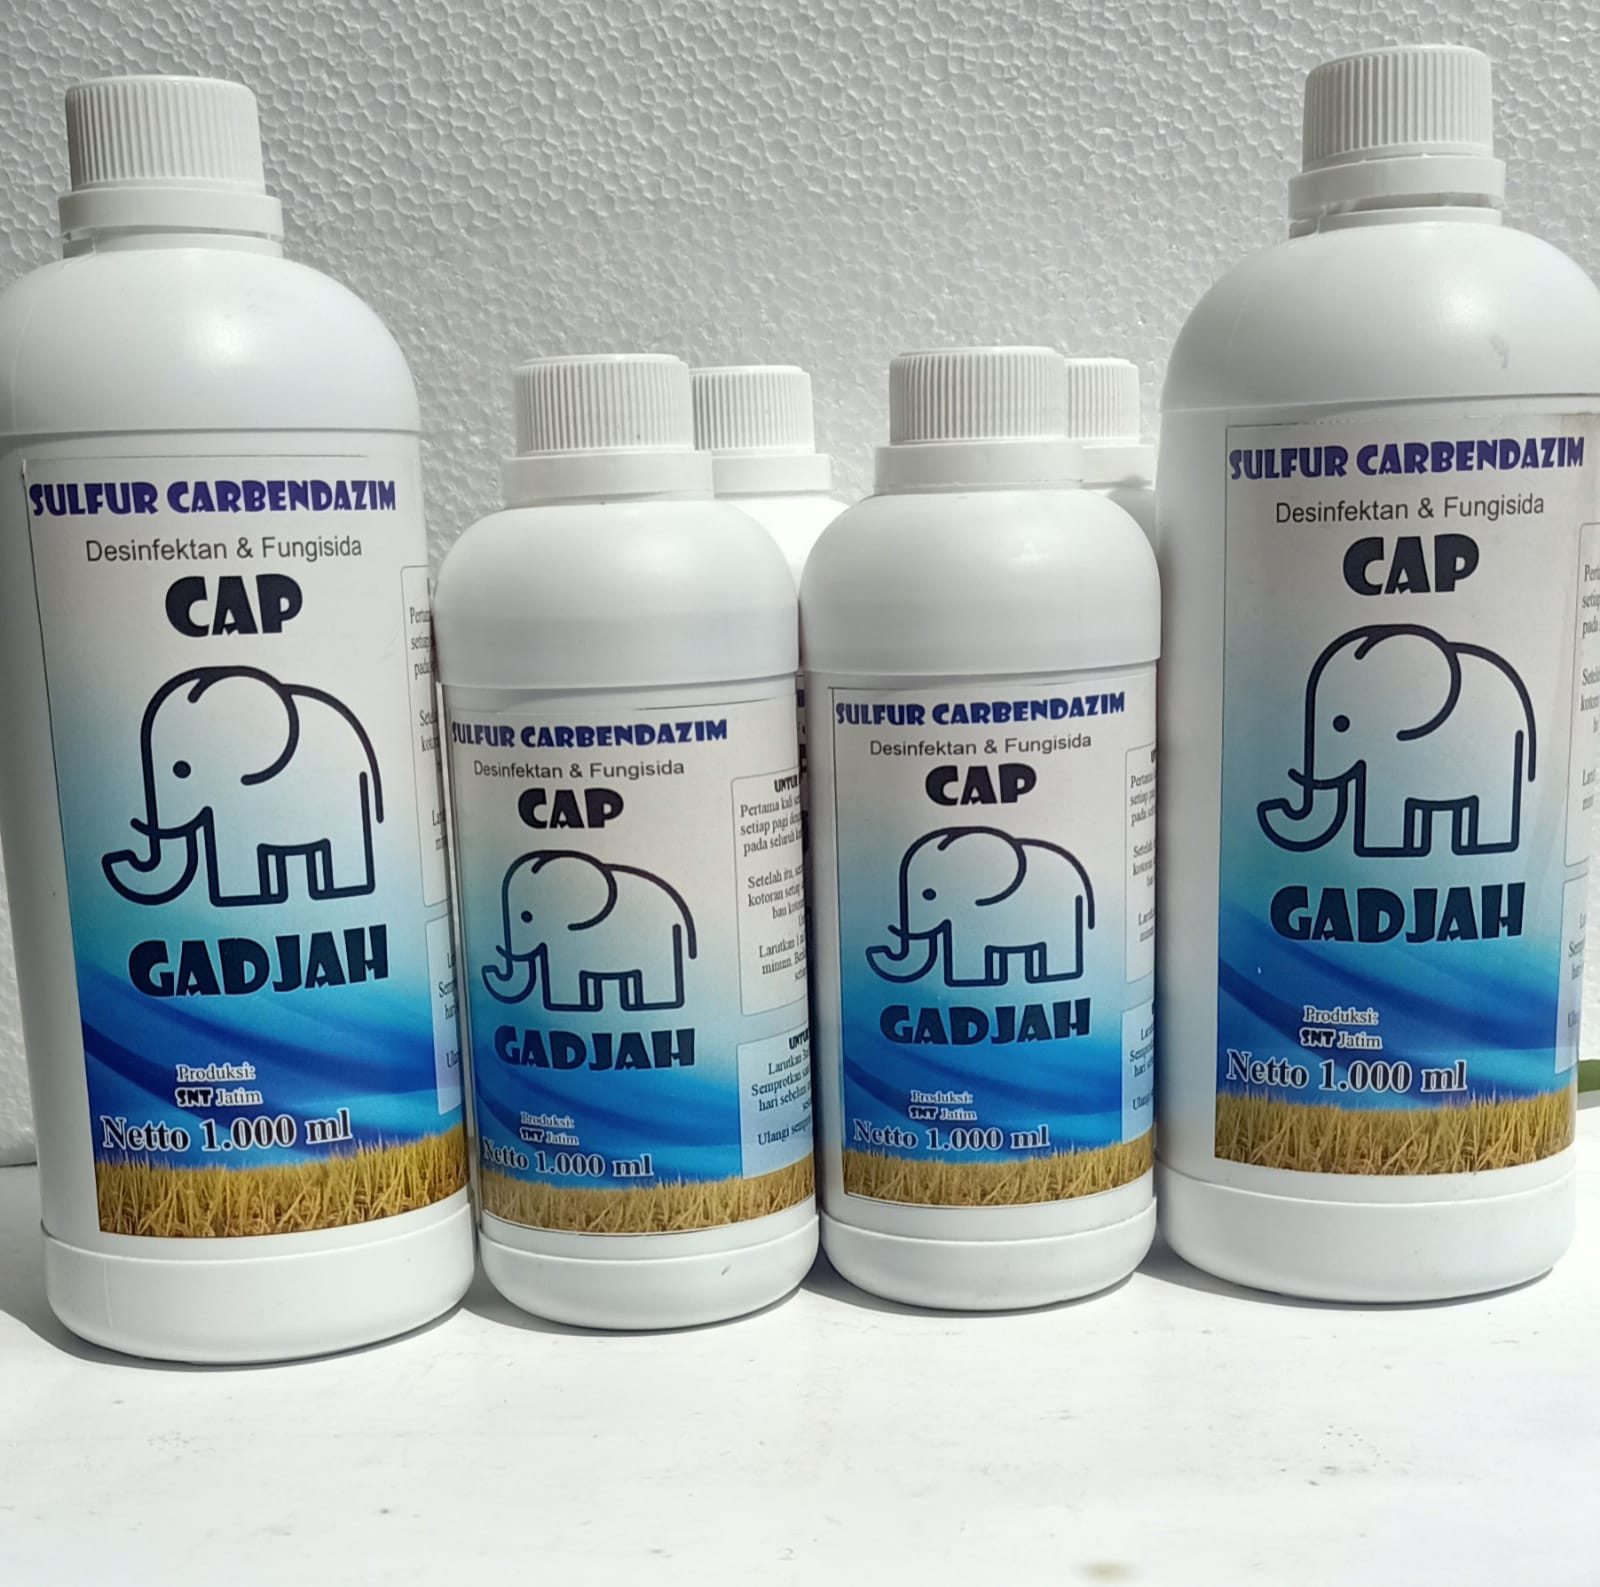 Sulfur Carbendazim & Fungisida Desinfektan Cap Gadjah